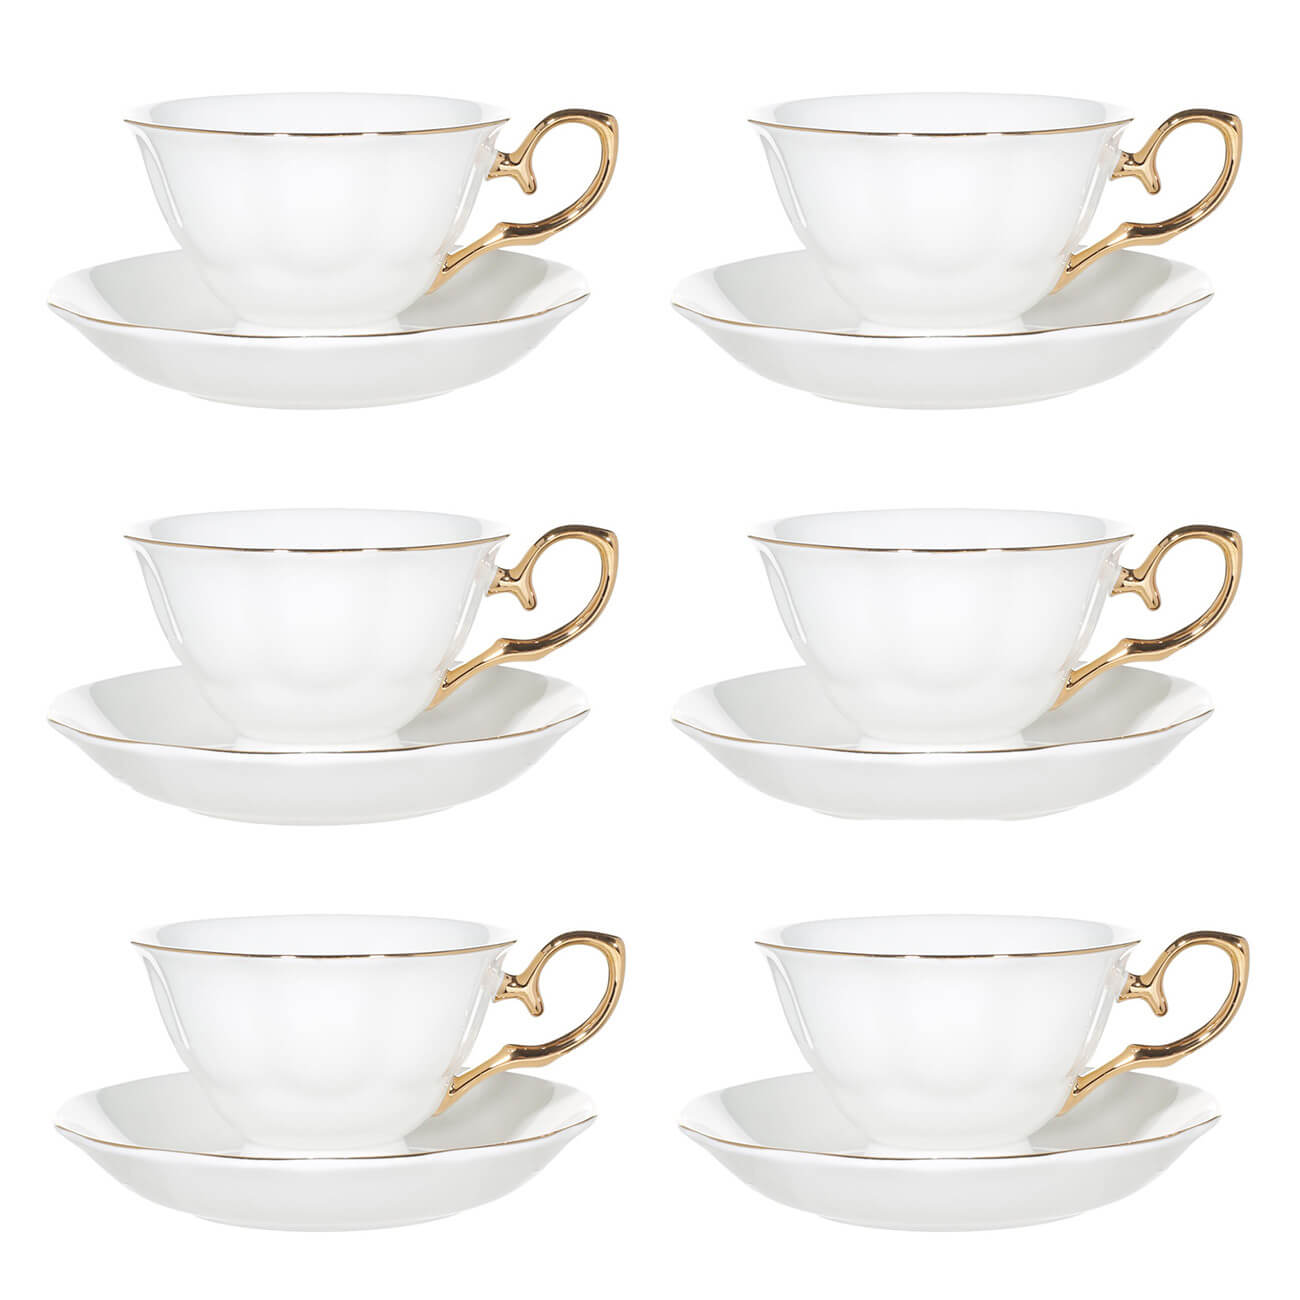 Пара чайная, 6 перс, 12 пр, 180 мл, фарфор F, бело-золотистая, Premium Gold изображение № 1